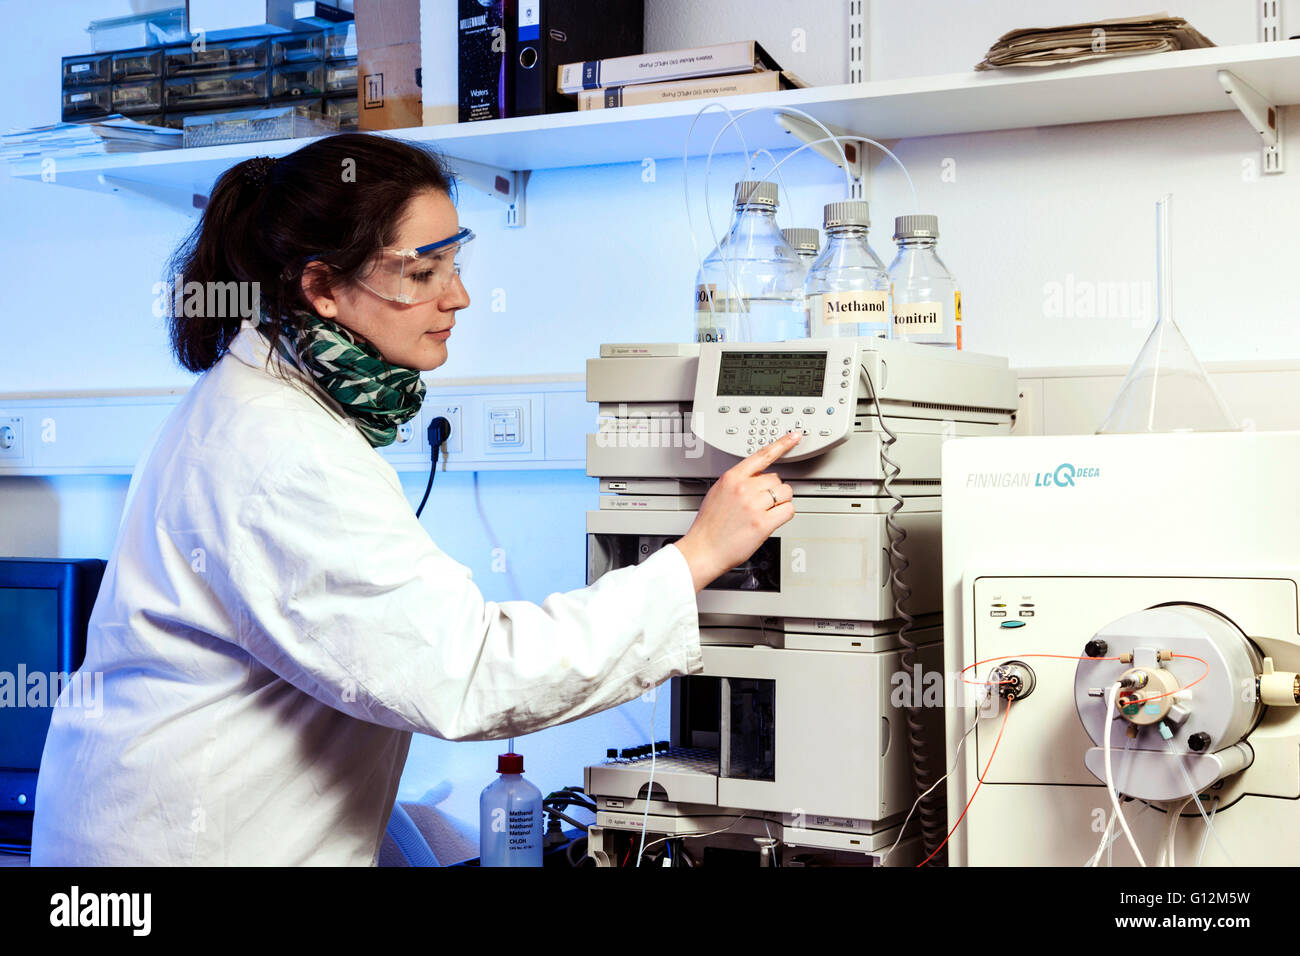 Assistente di laboratorio durante il suo lavoro presso la macchina di analisi dell'istituto. Foto Stock